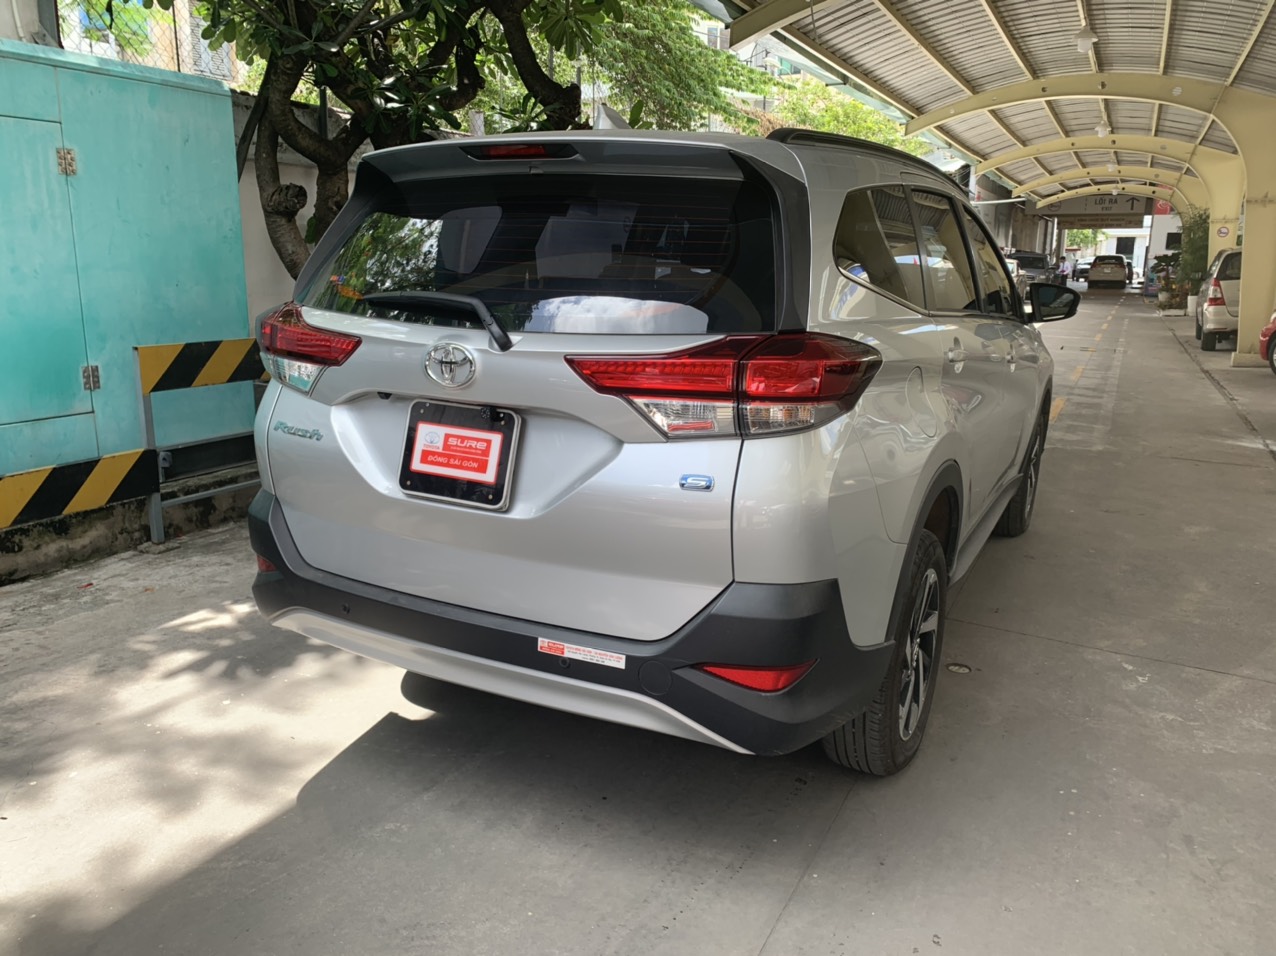 Toyota Toyota khác 2019 - Rush 2019 lướt 7600km giá sốc bao test toàn quốc